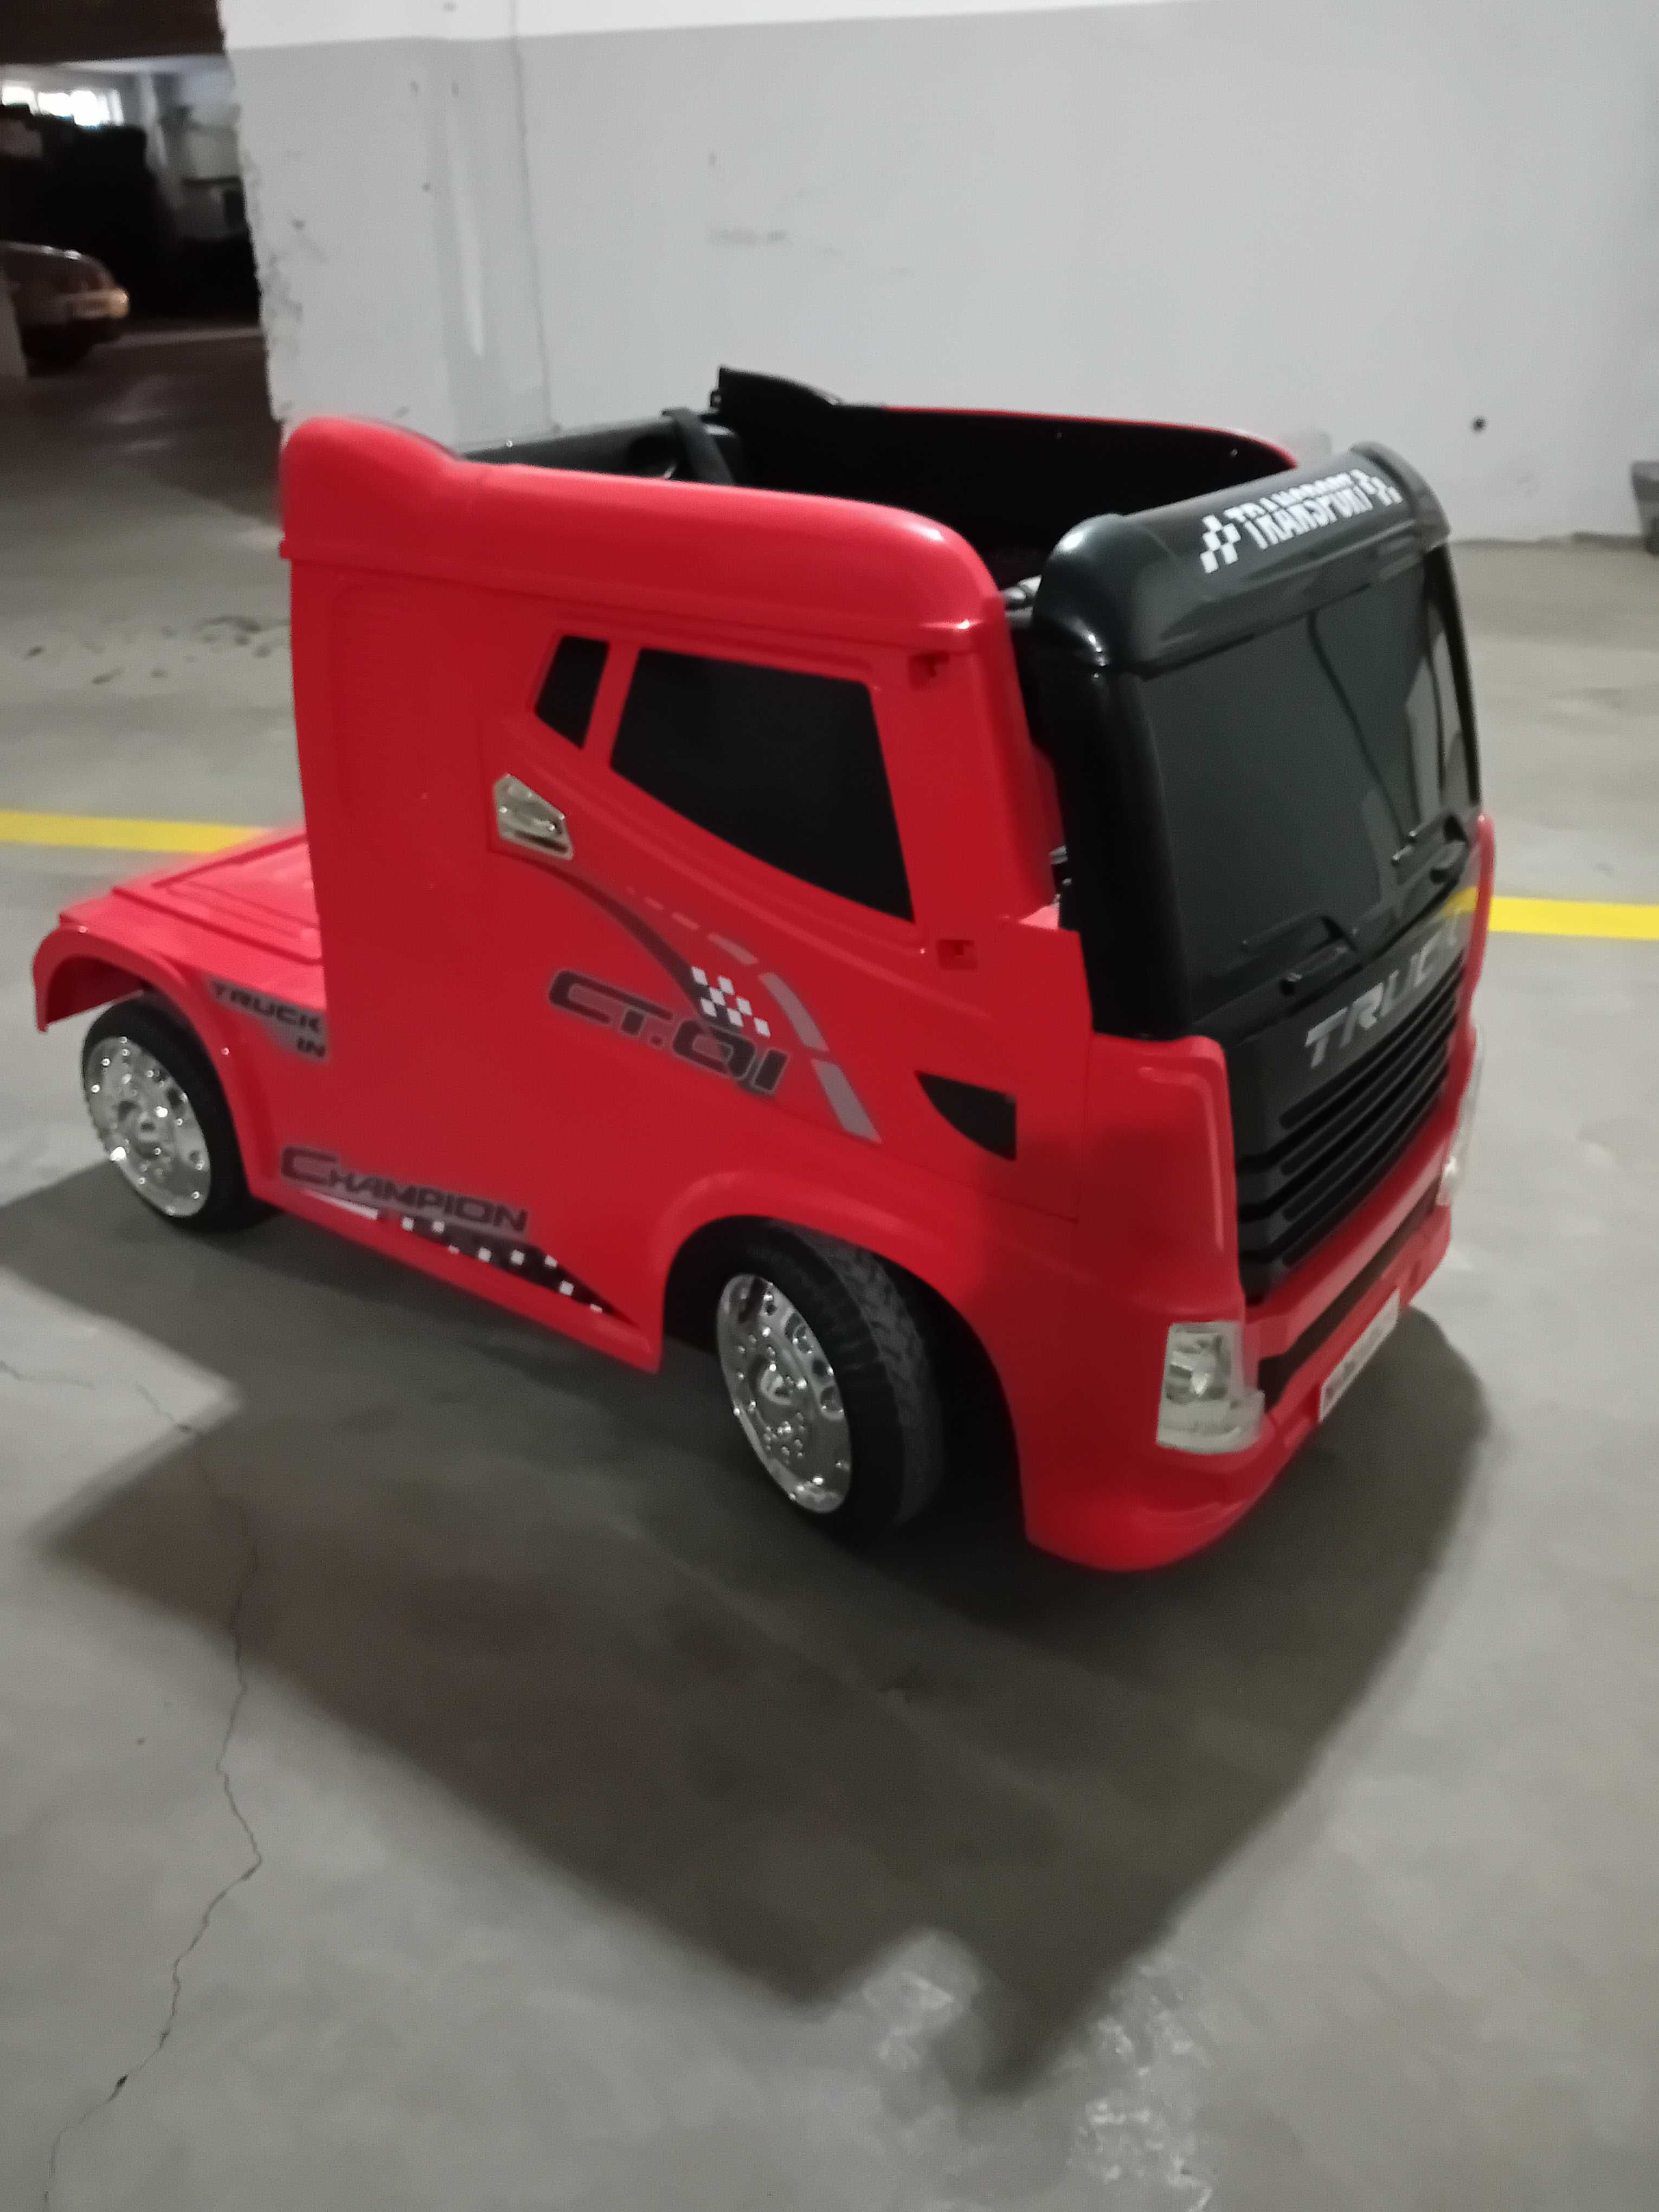 Vand camion electric pentru copii